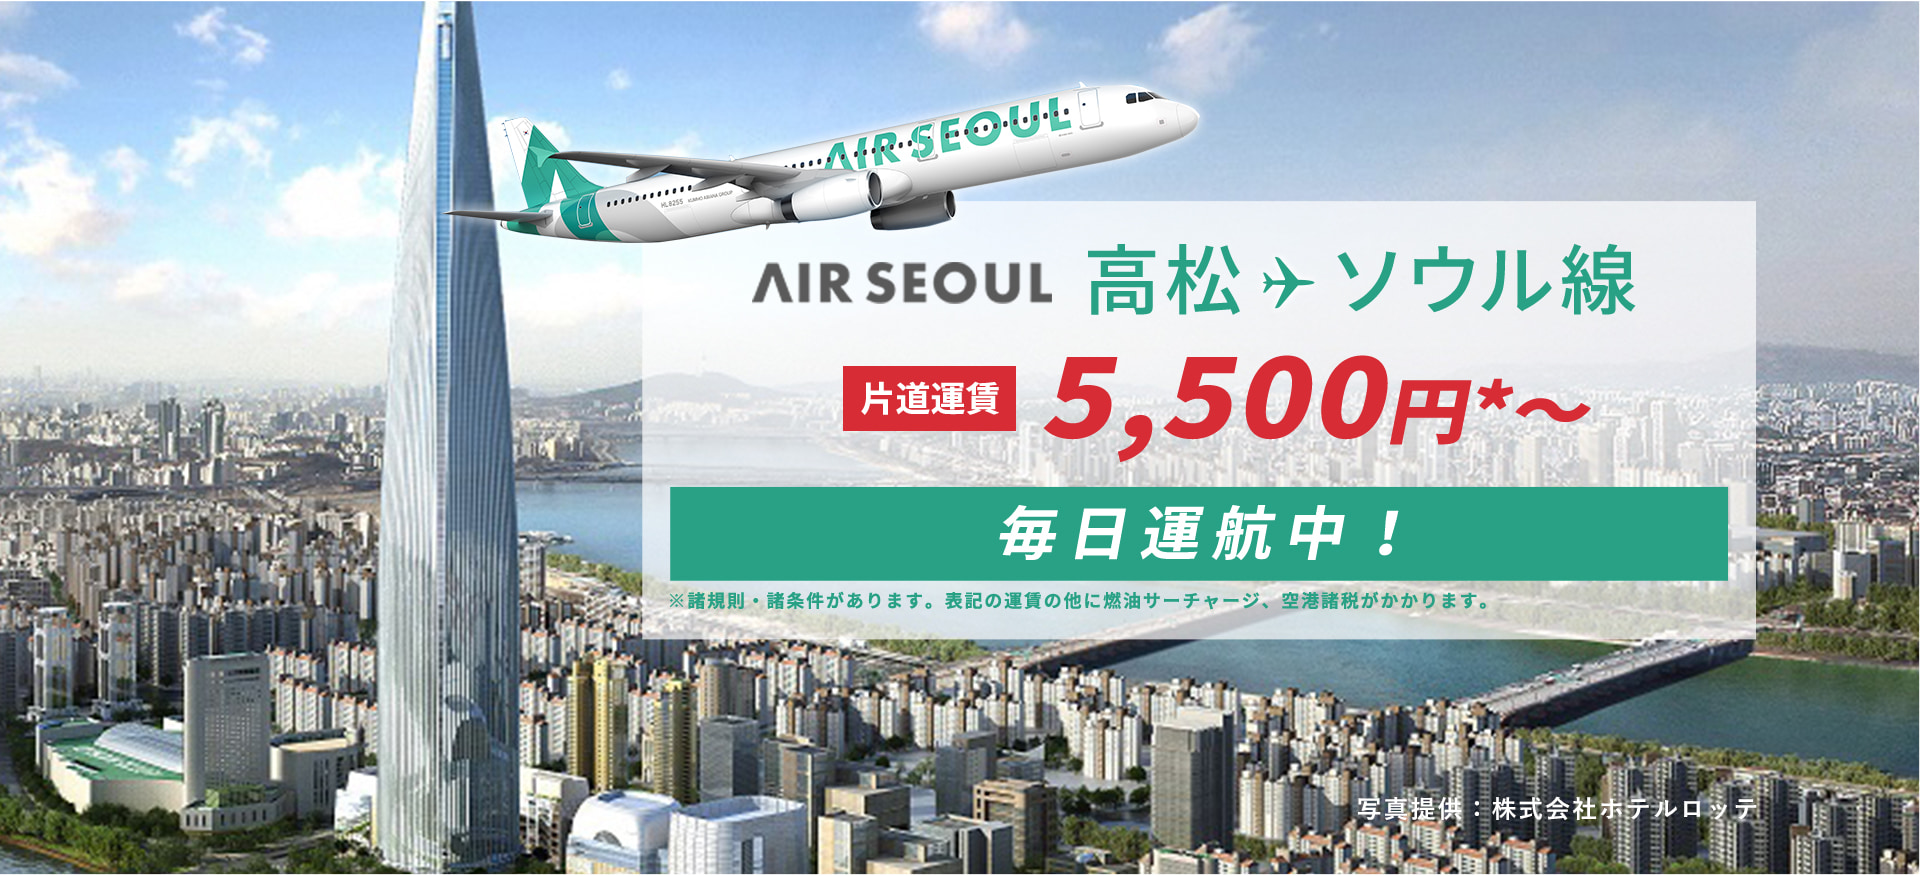 AIR SEOUL 高松 - ソウル線 直行便運航中